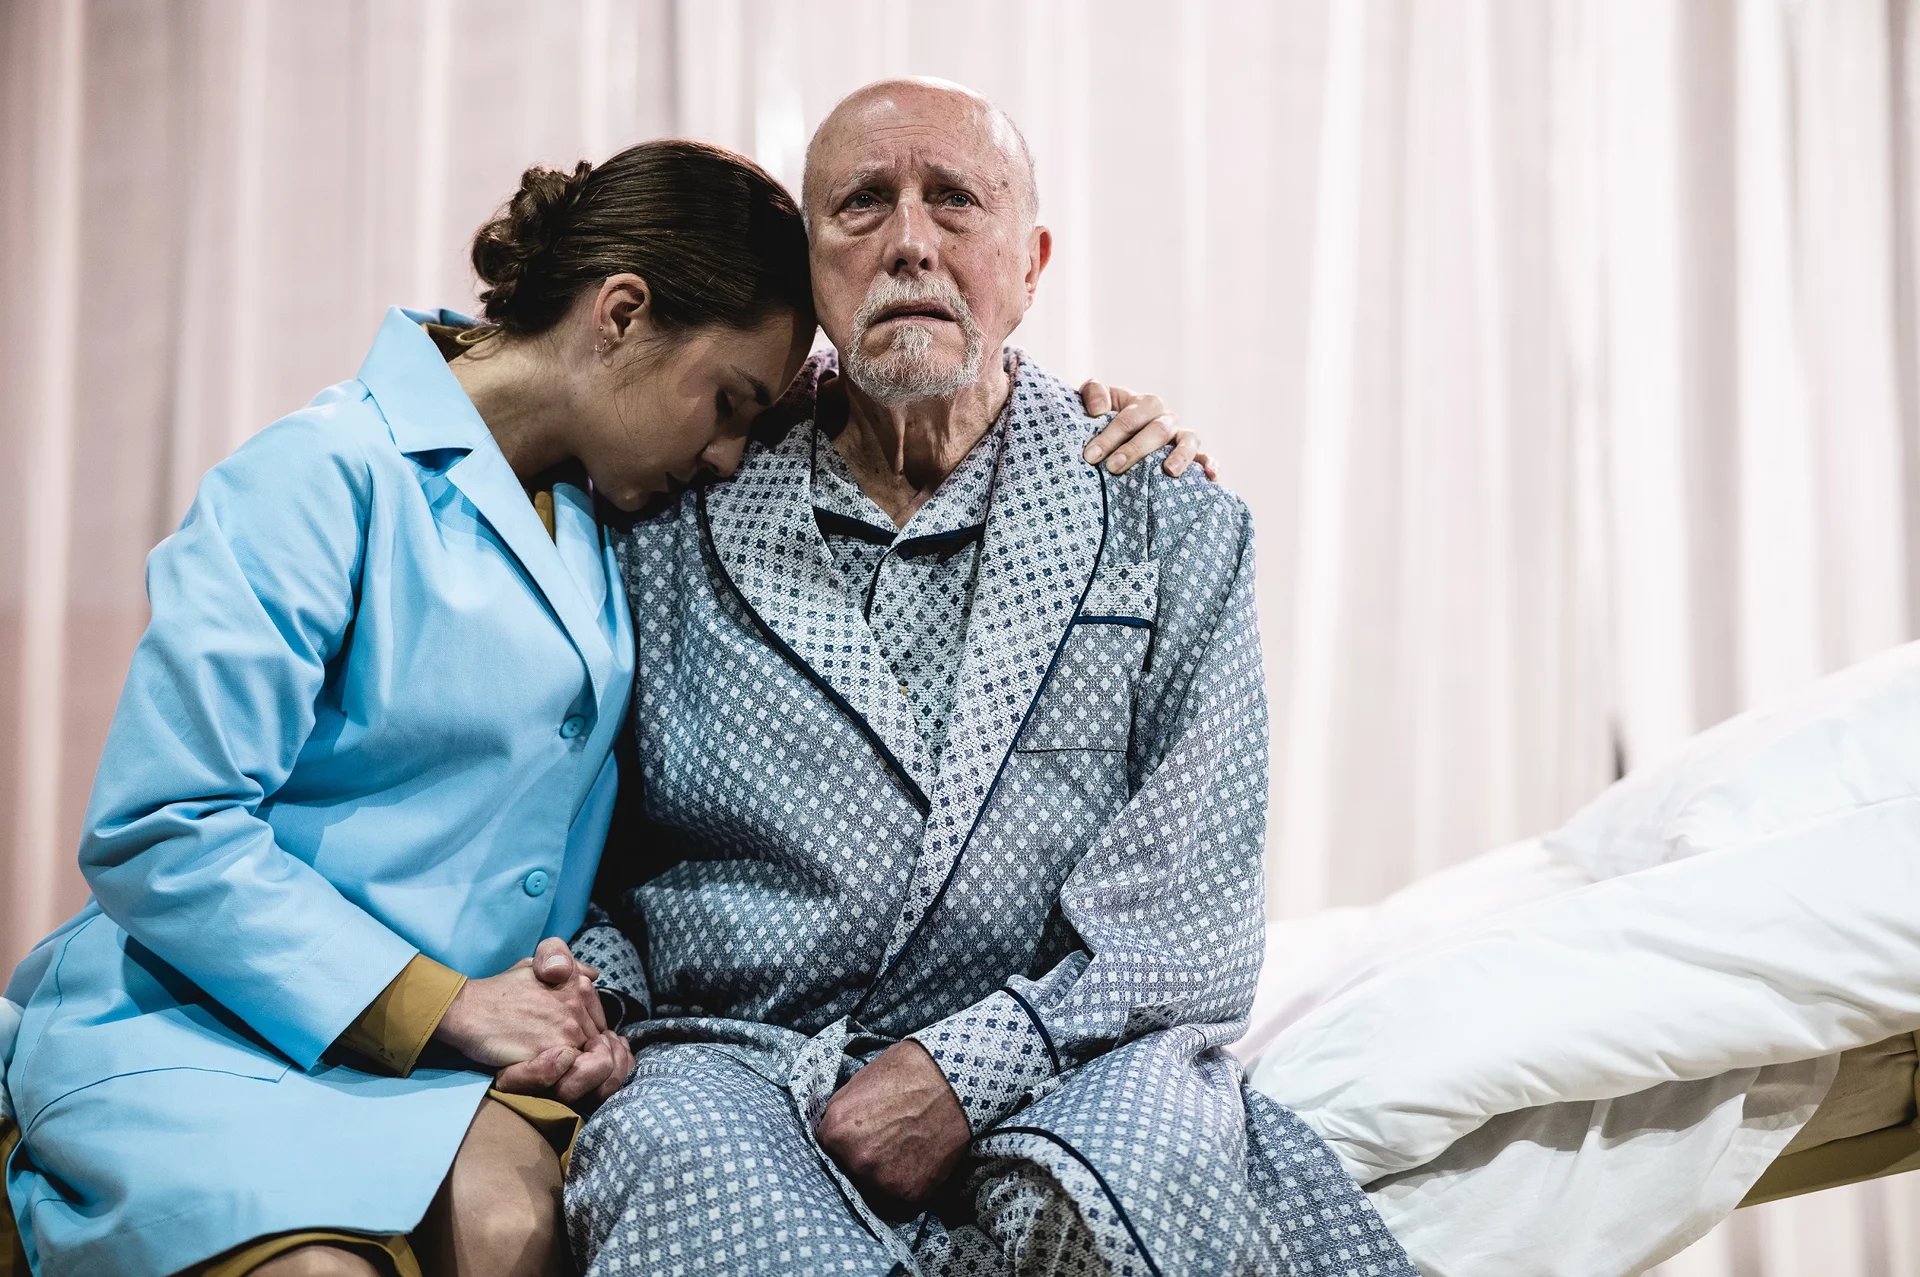 Siedzący na łóżku starszy aktor w piżamie z przerażoną miną. Obok niego siedzi młodsza aktorka w błękitnej marynarce, trzyma go za dłoń i wtula w niego głowę.